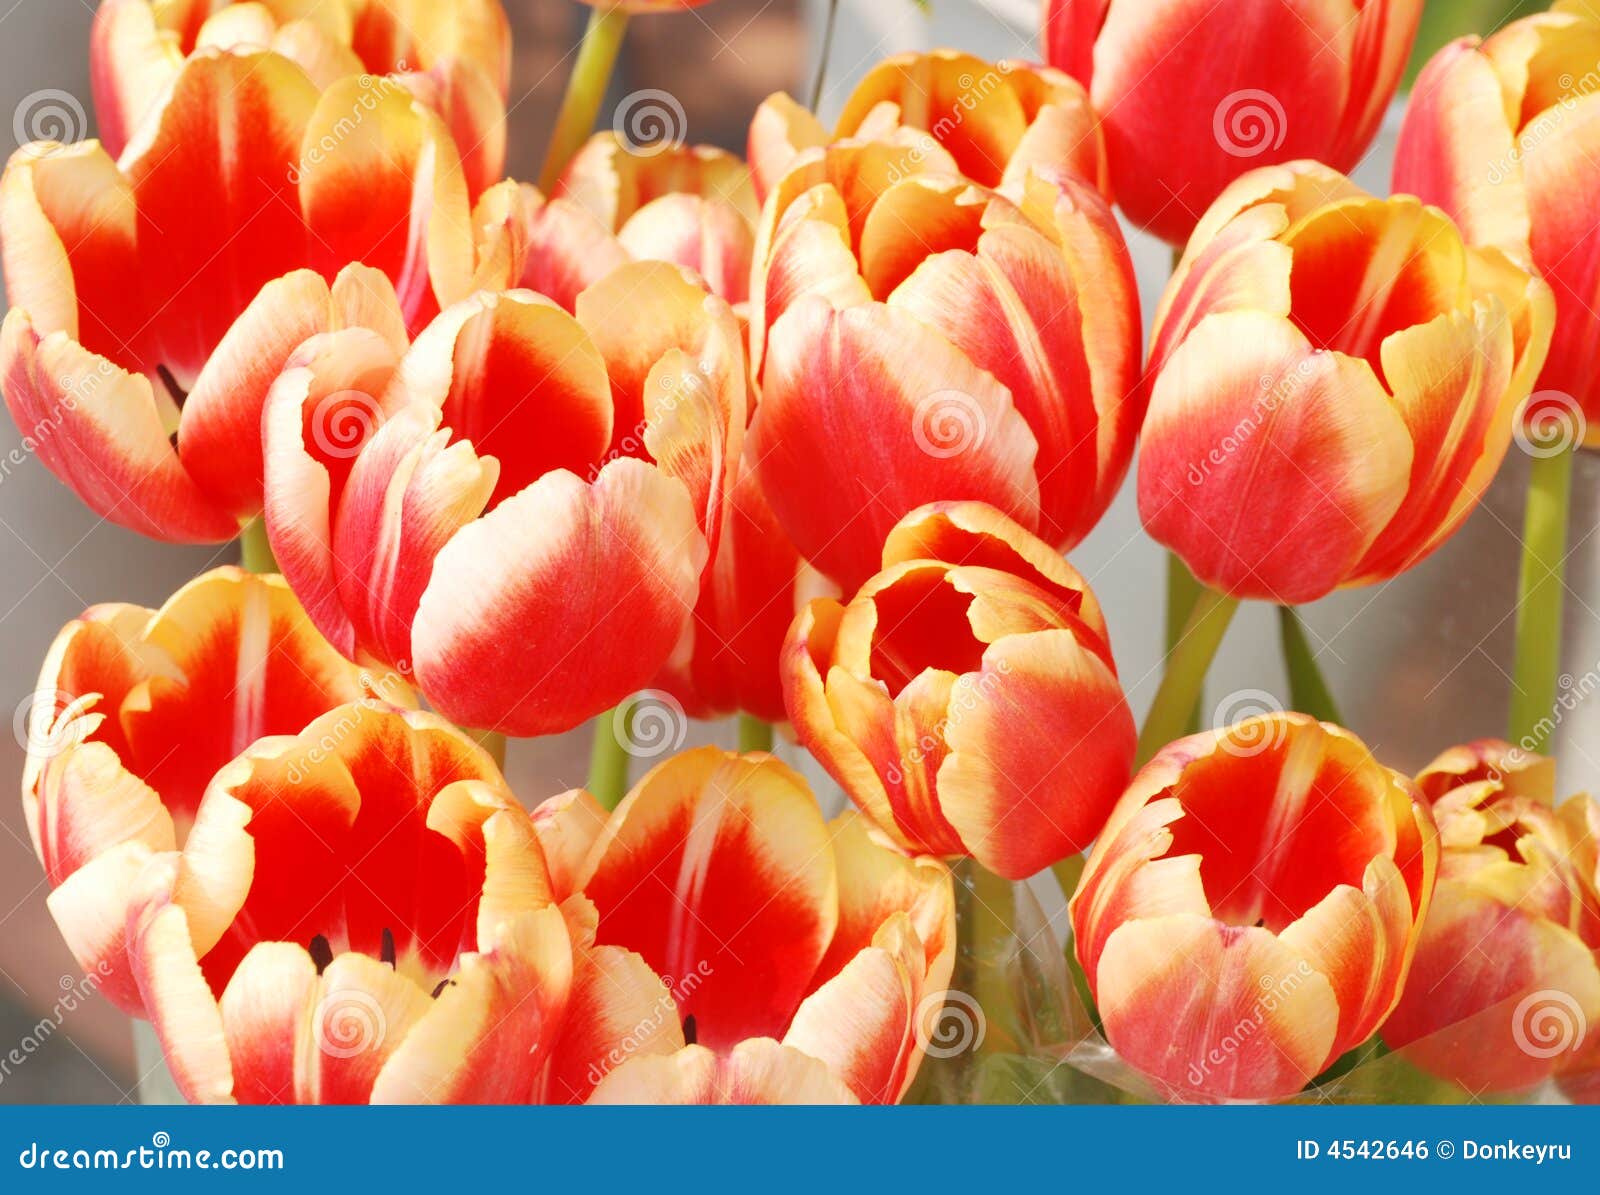 showy tulips